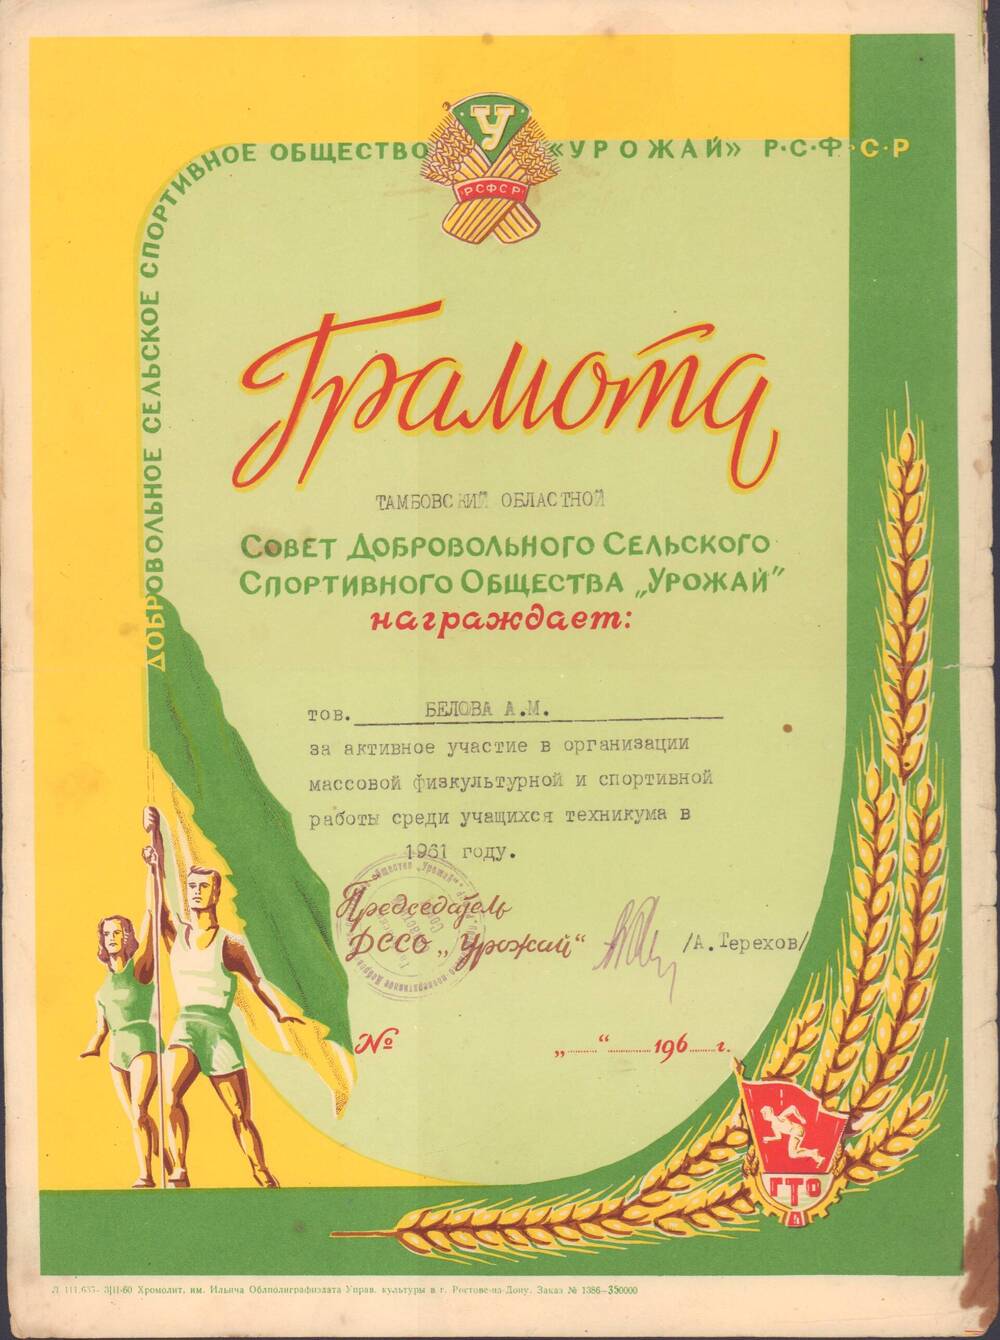 Грамота Белова А.М., Тамбовский областной Совет ДССО Урожай, 1961 г.